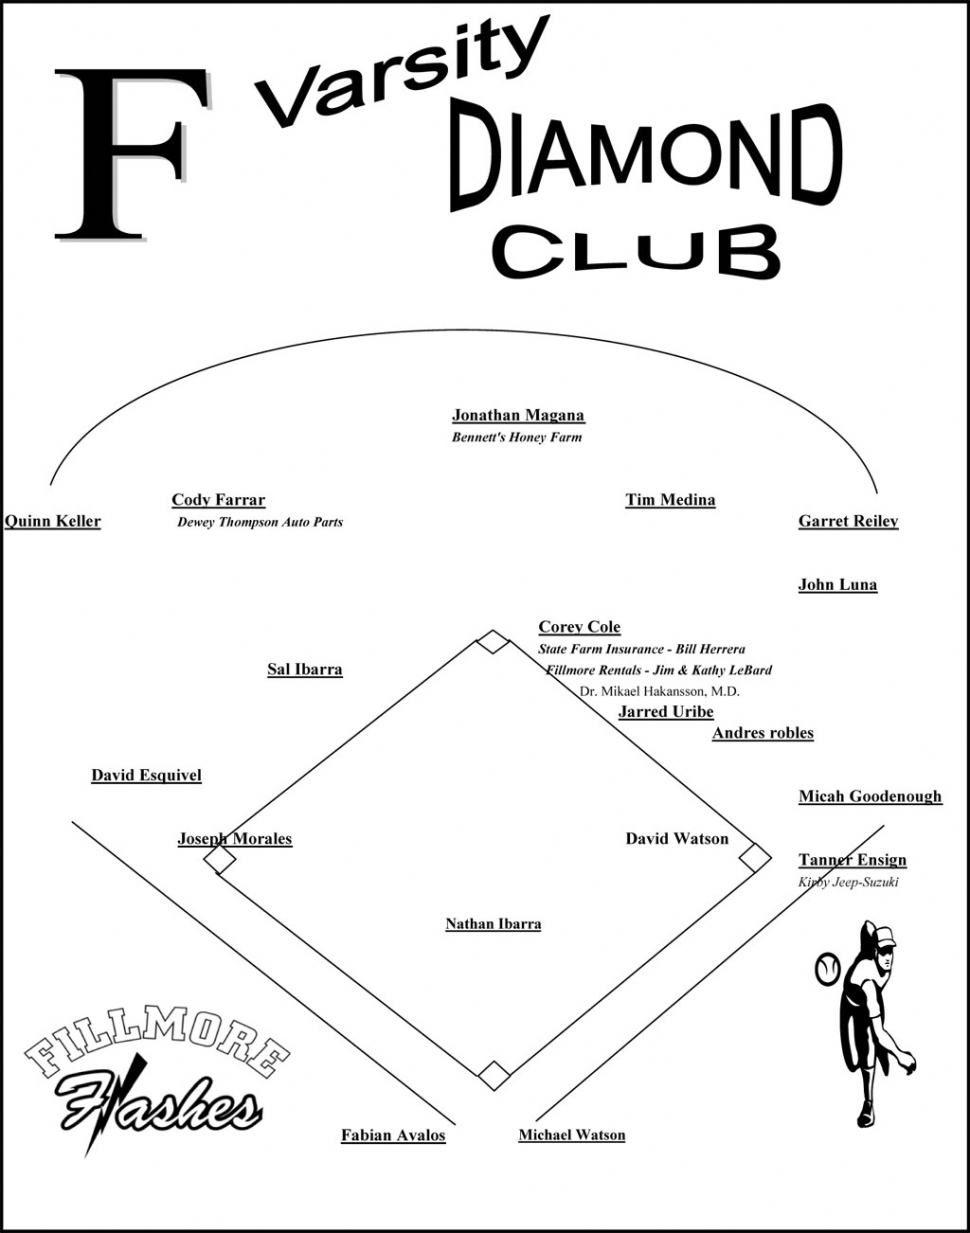 Varsity Diamond Club